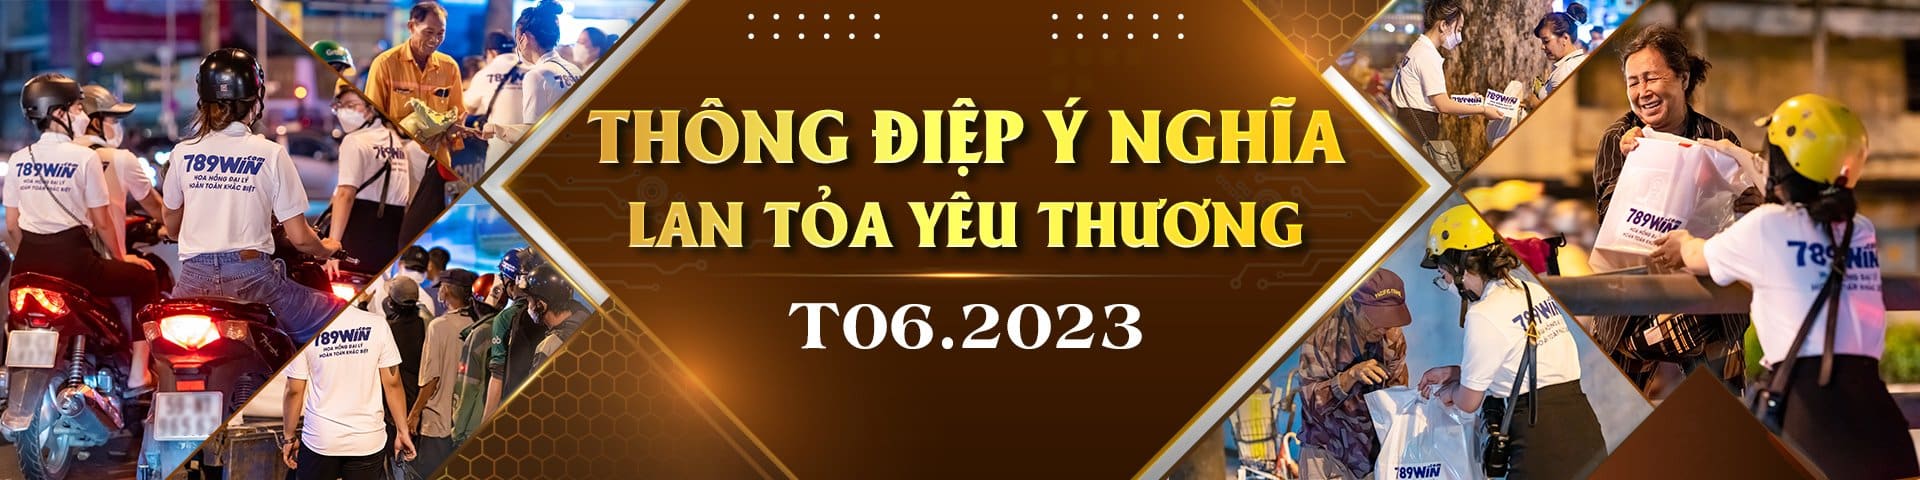 thong diep y nghia thang 6 789win